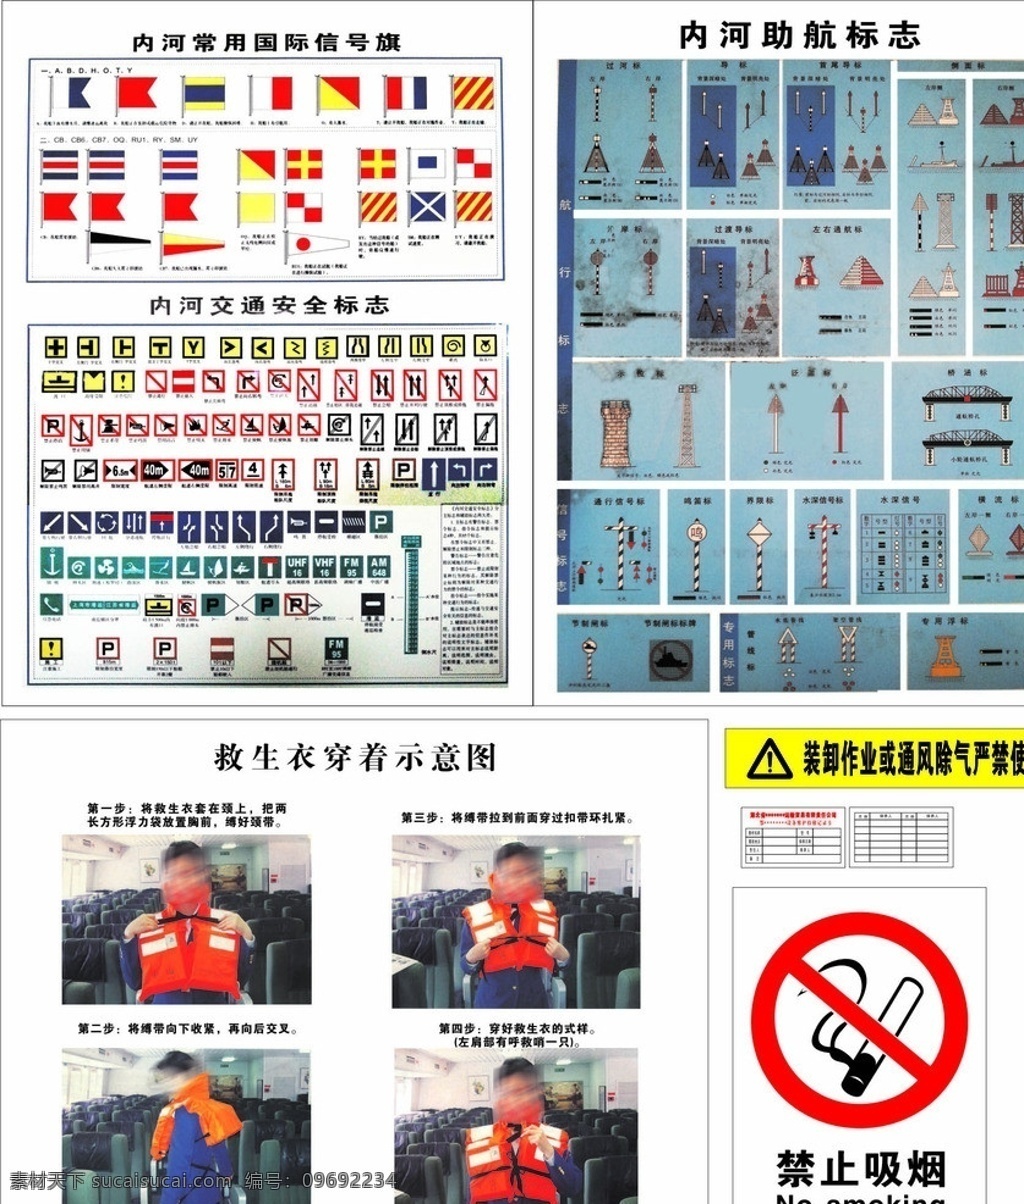 船舶 牌子 禁止吸烟 内河 常用 国际 信号旗 内河助航标识 交通安全 标识 救生衣 穿着 示意图 禁止吸烟标识 公共标识标志 标识标志图标 矢量